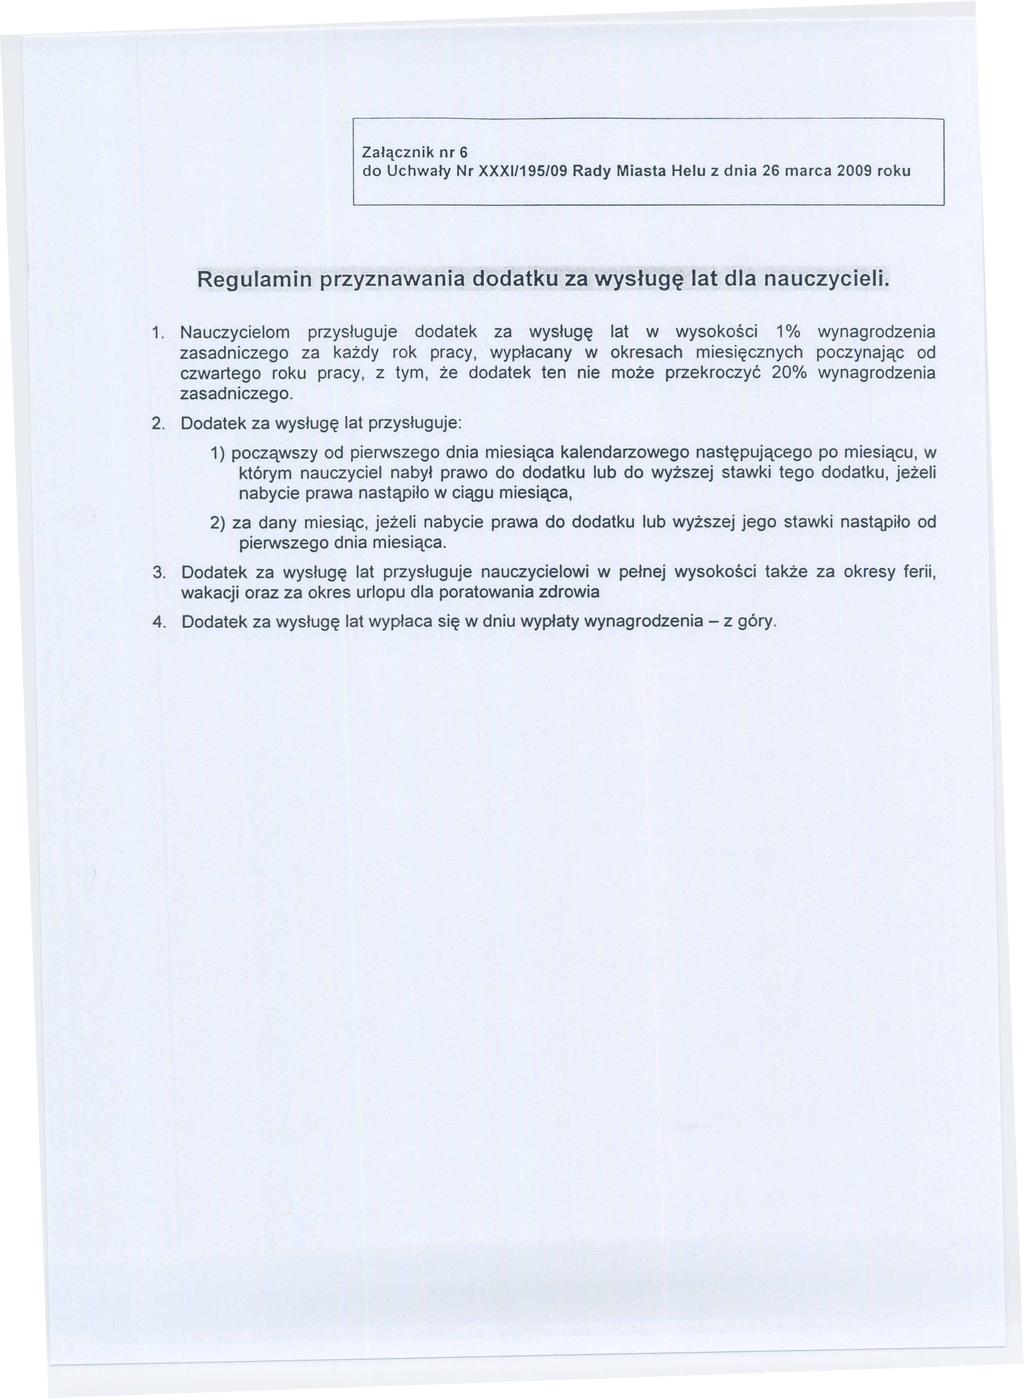 Załącznik nr 6 do Uchwały Nr XXXI/195/09 Rady Miasta Helu z dnia 26 marca 2009 roku Regulamin przyznawania dodatku za wysługę lat dla nauczycieli. 1.